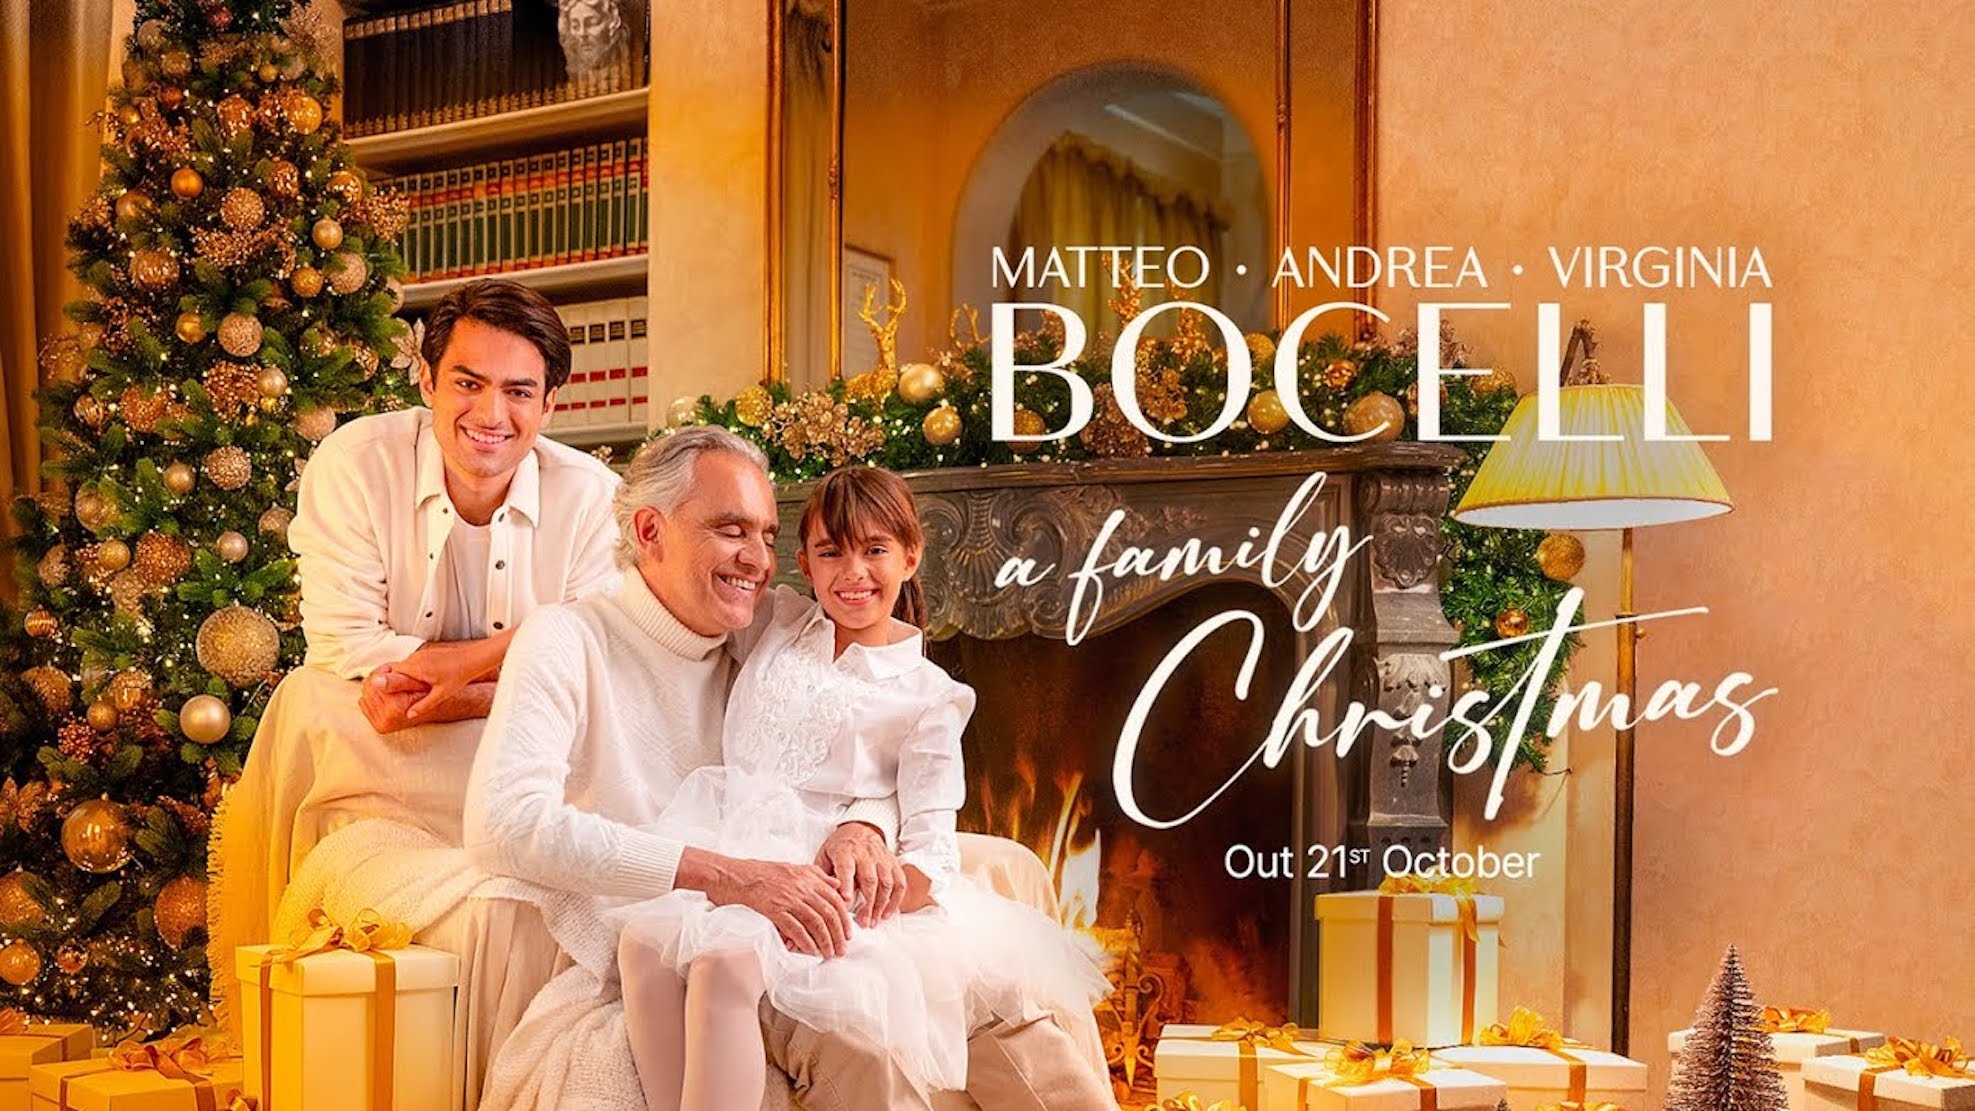 Τα χριστουγεννιάτικα του Andrea Bocelli